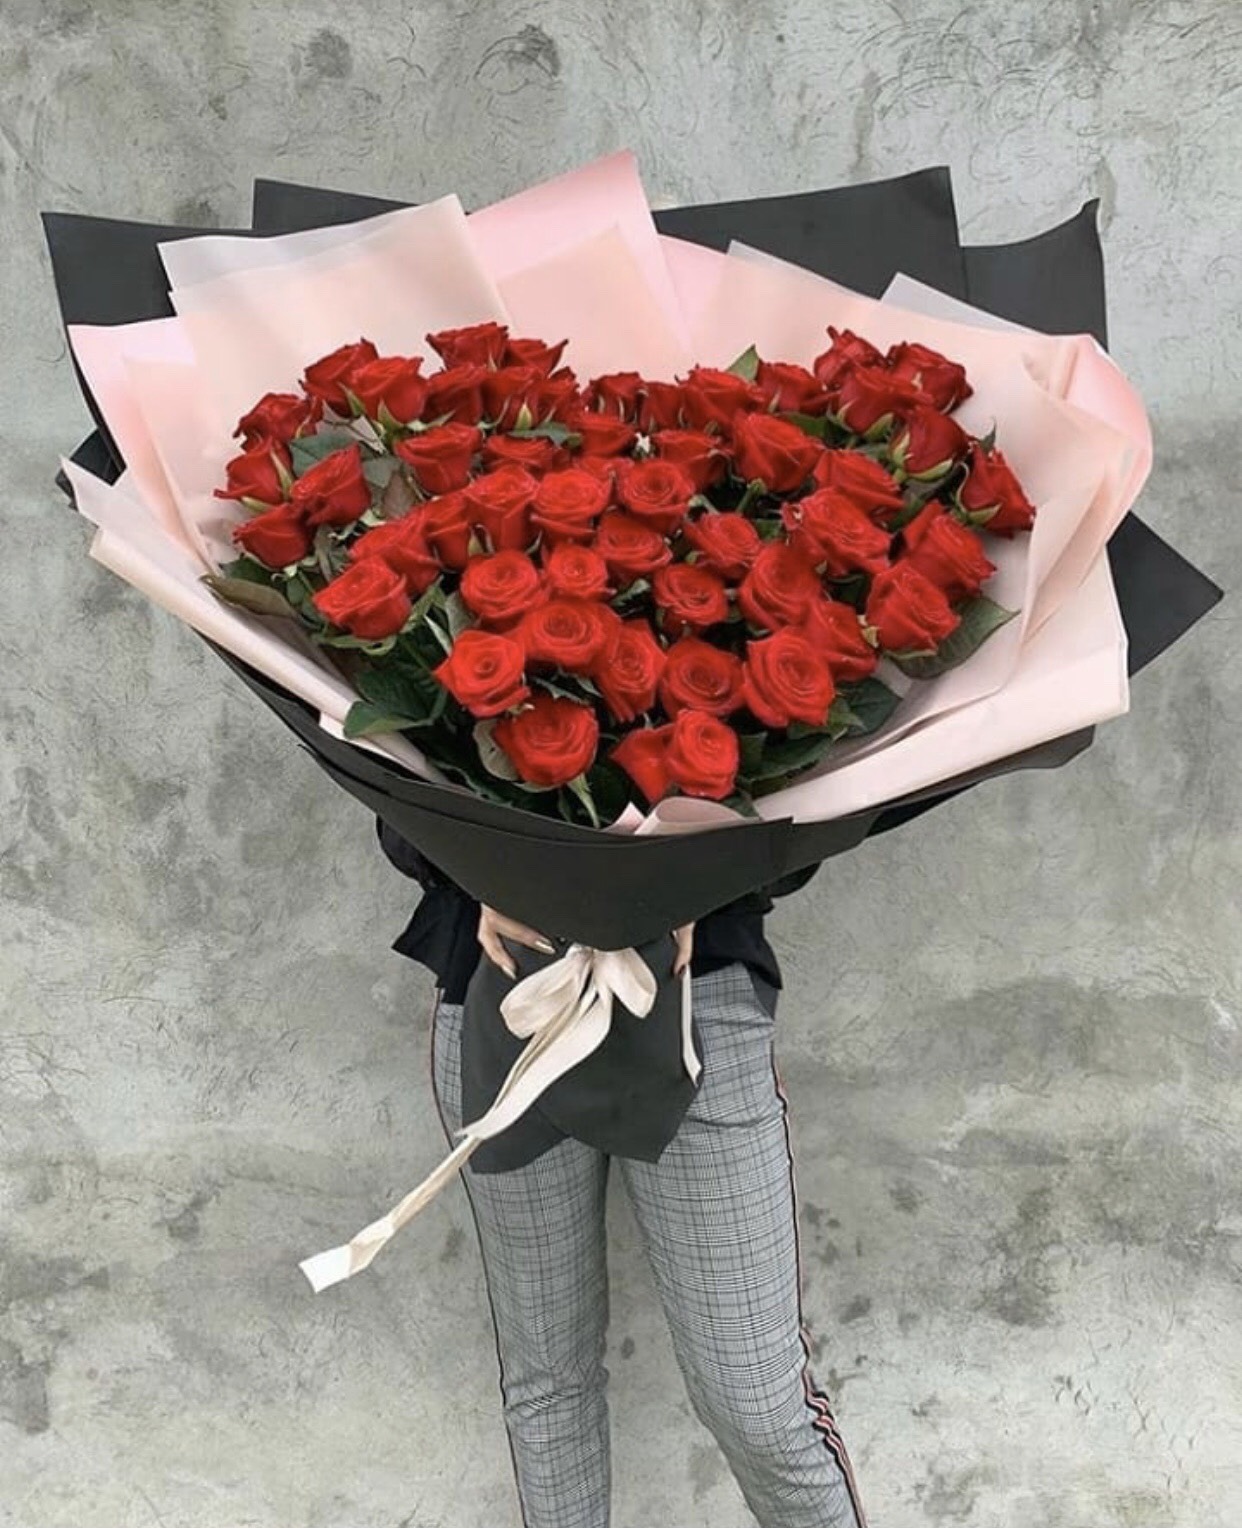 Với những ai đang muốn tìm kiếm bó hoa hồng đỏ nhập khẩu để tặng người thân yêu, hãy xem ngay những hình ảnh tuyệt đẹp về bó hồng đỏ nhập khẩu tại đây. Chúng tôi sẽ mang đến cho bạn những sản phẩm tốt nhất, được nhập khẩu từ các nước Châu Âu và Đông Nam Á.